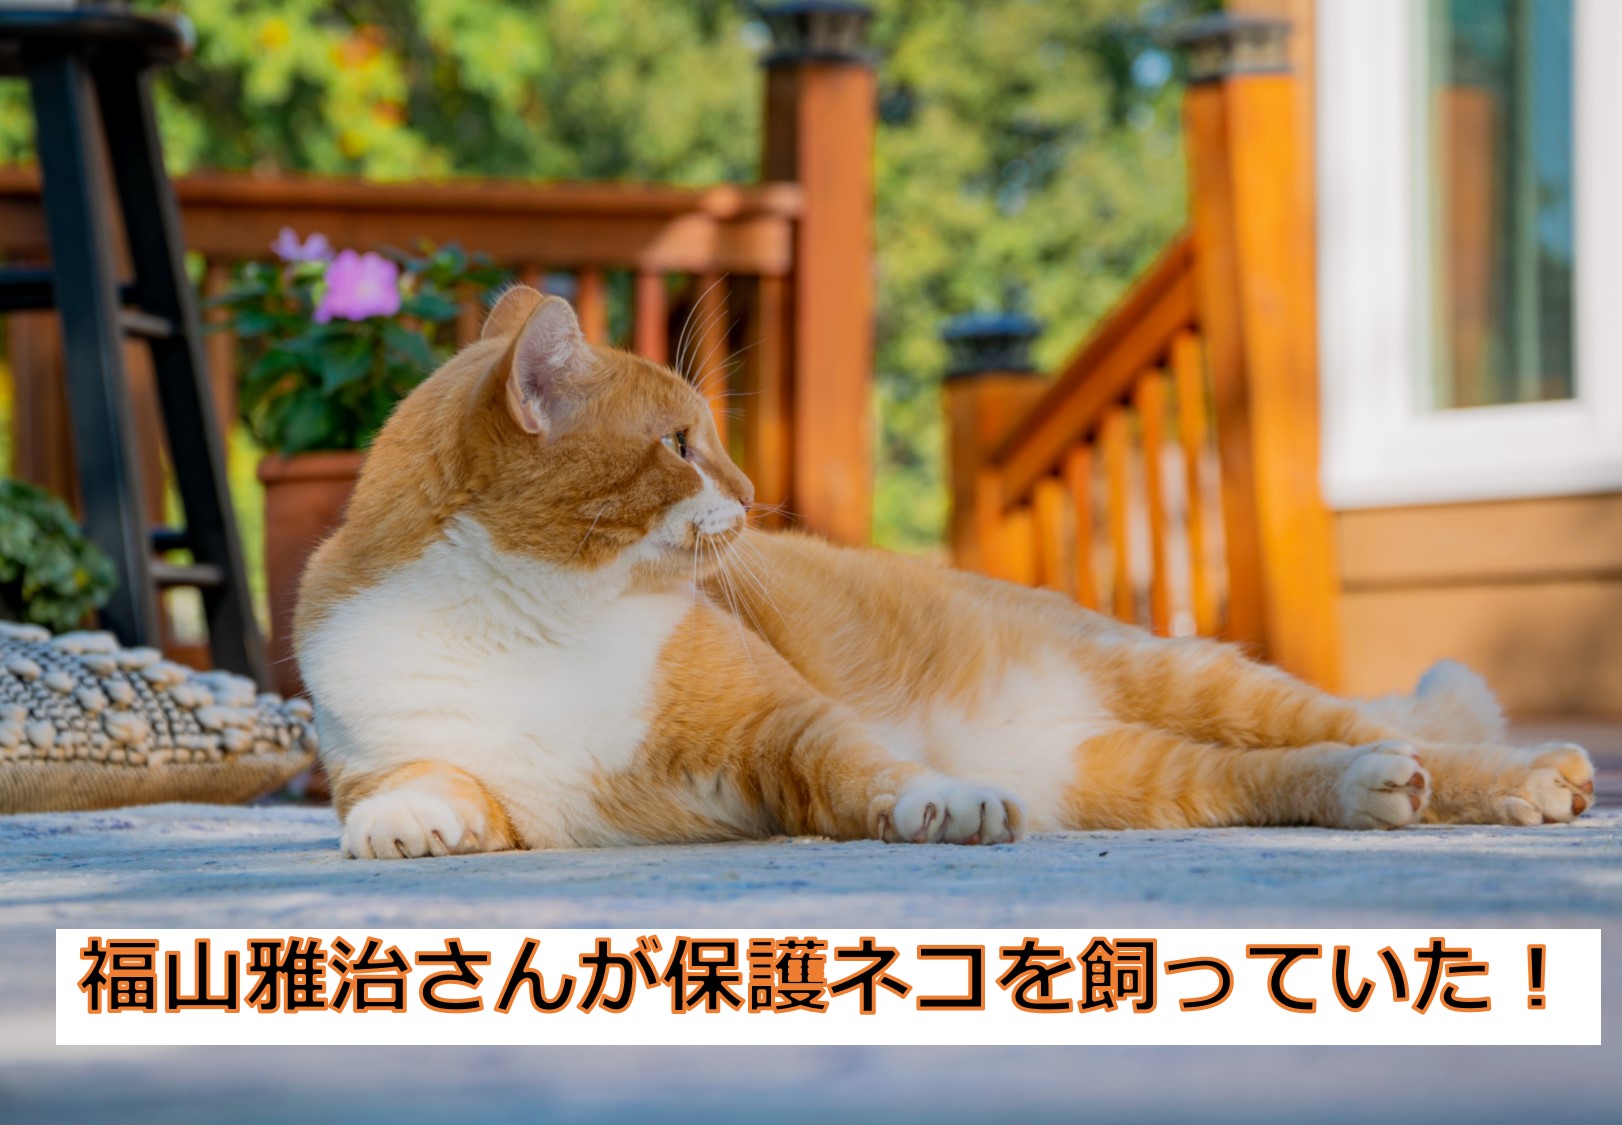 福山雅治さんが保護ネコを飼っていたことをラジオで初告白 かごめchannel